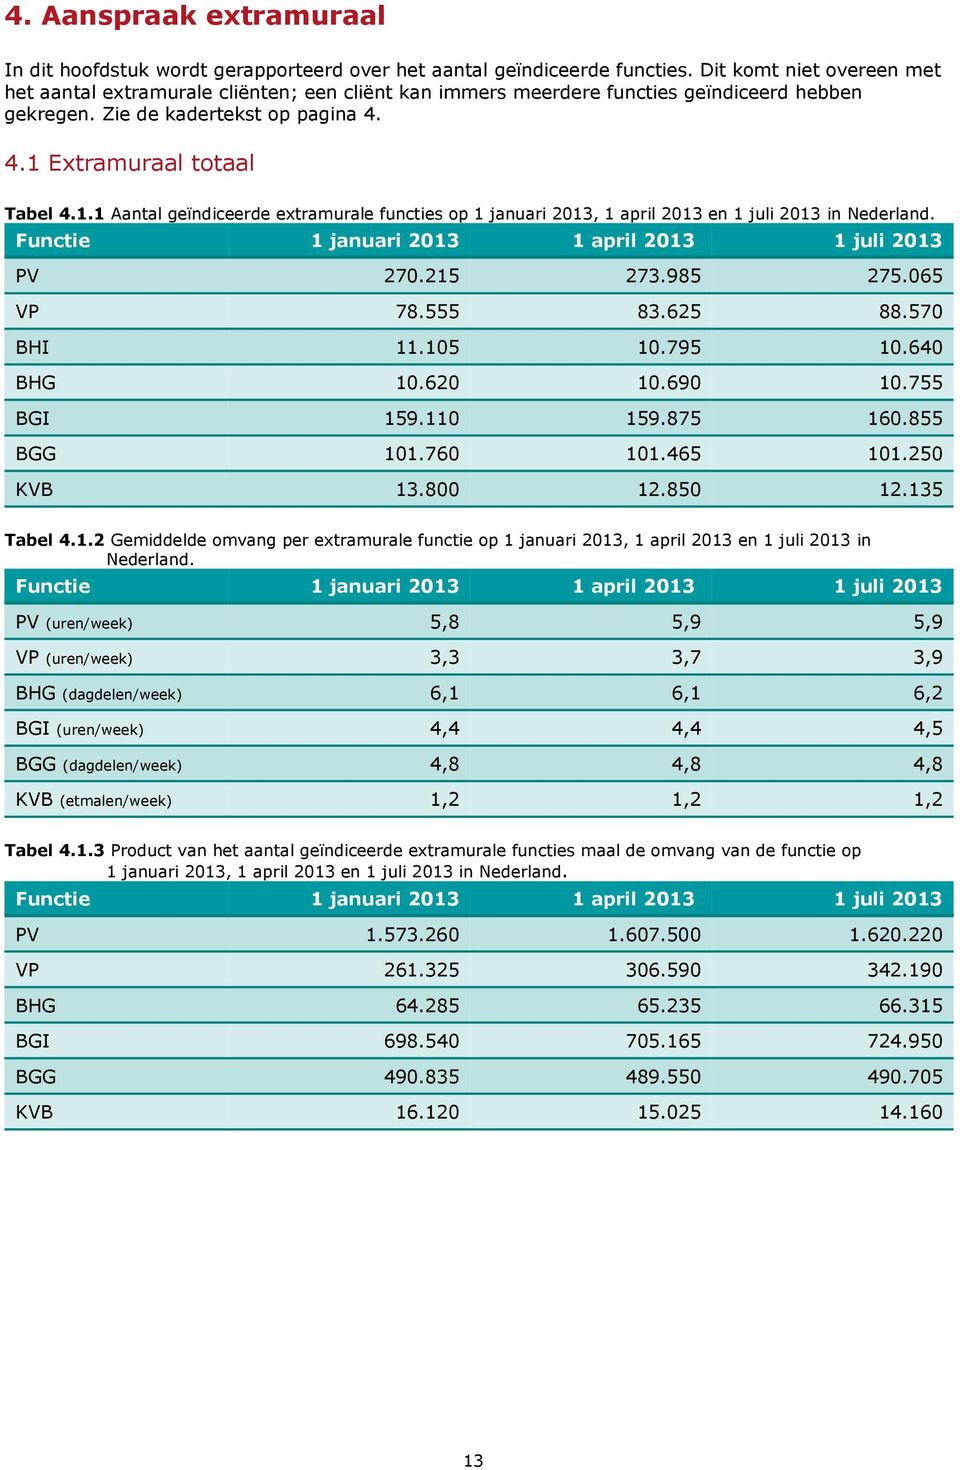 Extramuraal totaal Tabel 4.1.1 Aantal geïndiceerde extramurale functies op 1 januari 2013, 1 april 2013 en 1 juli 2013 in Nederland. Functie 1 januari 2013 1 april 2013 1 juli 2013 PV 270.215 273.